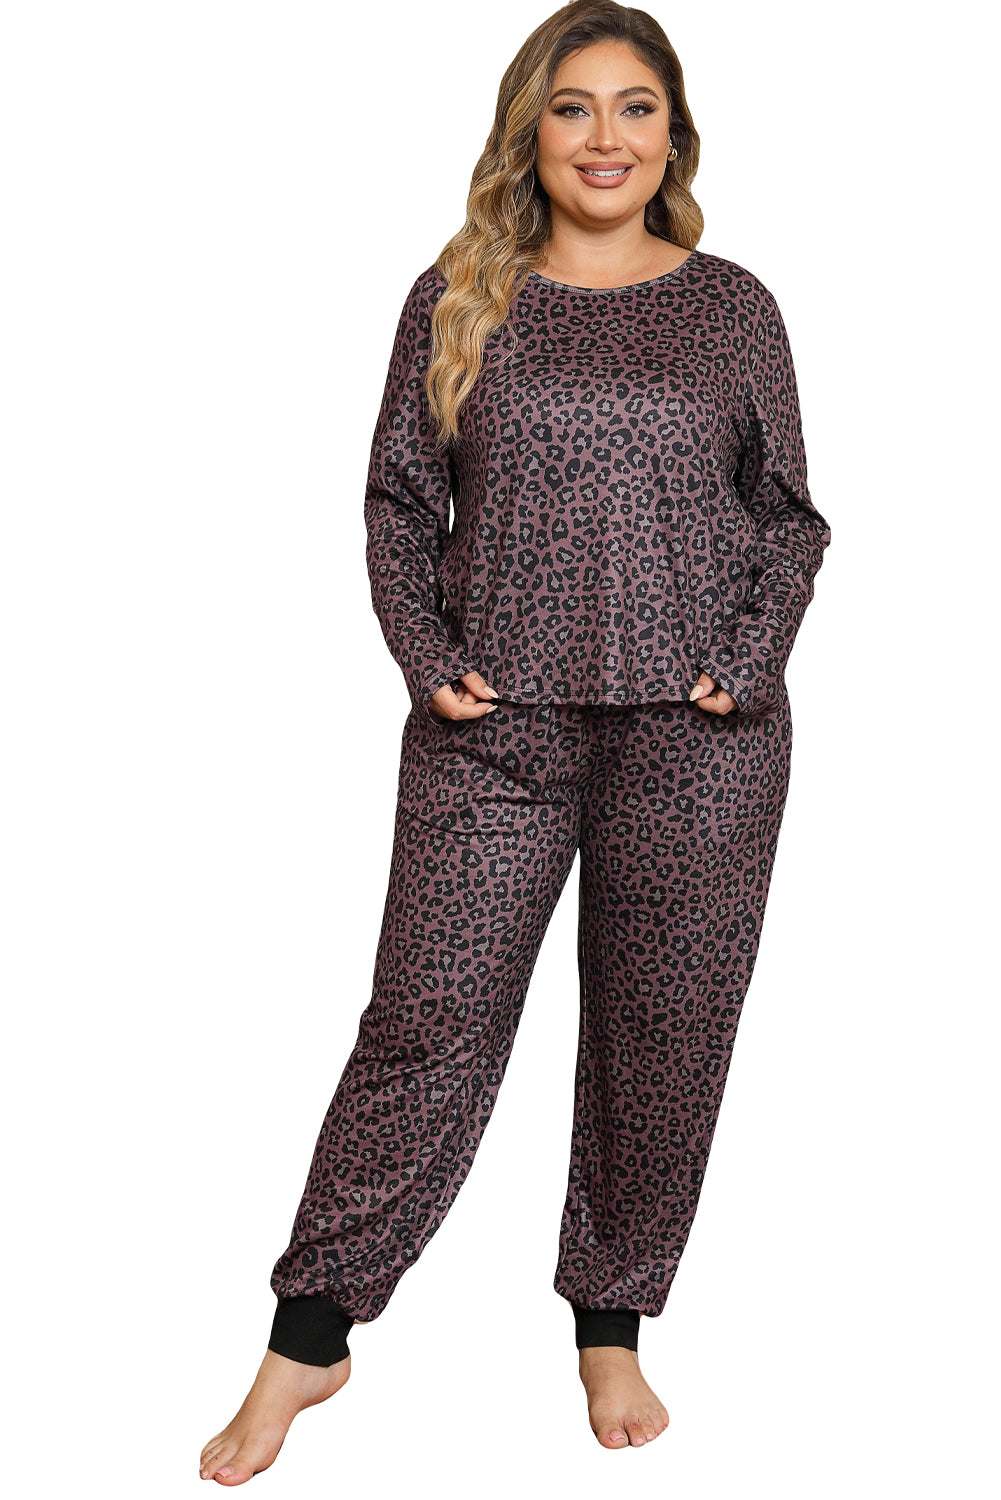 Leopard Plus Size Long Sleeve Pants Outfit